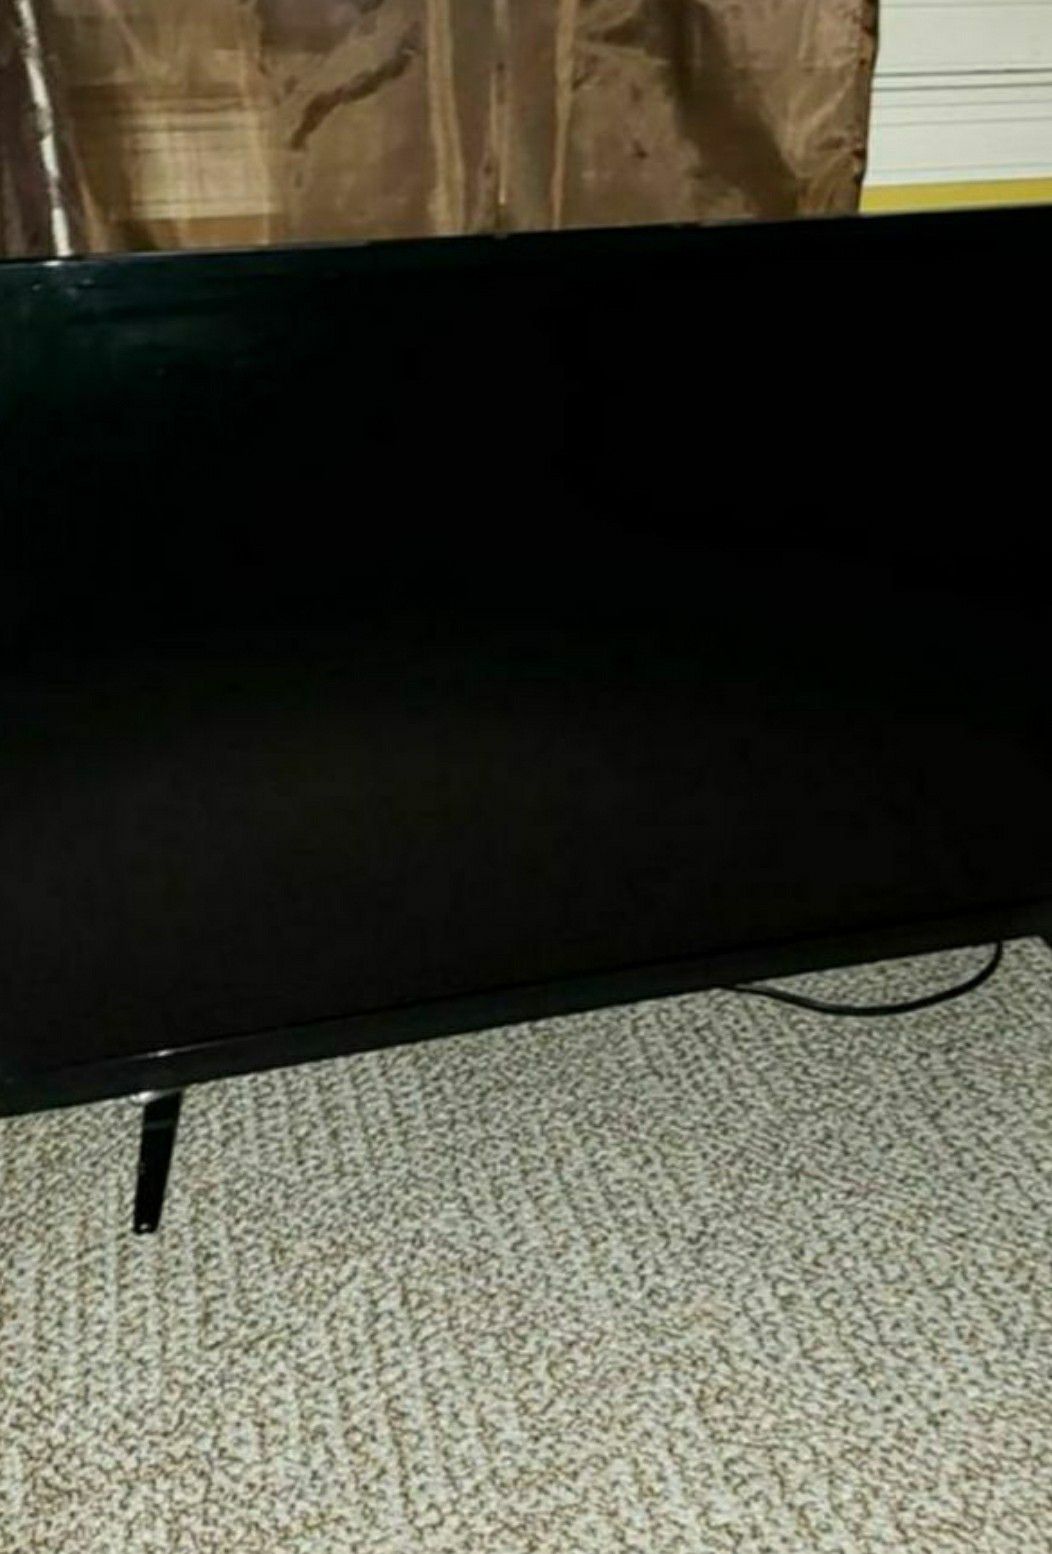 Vizio 32 inch TV great condition with remote